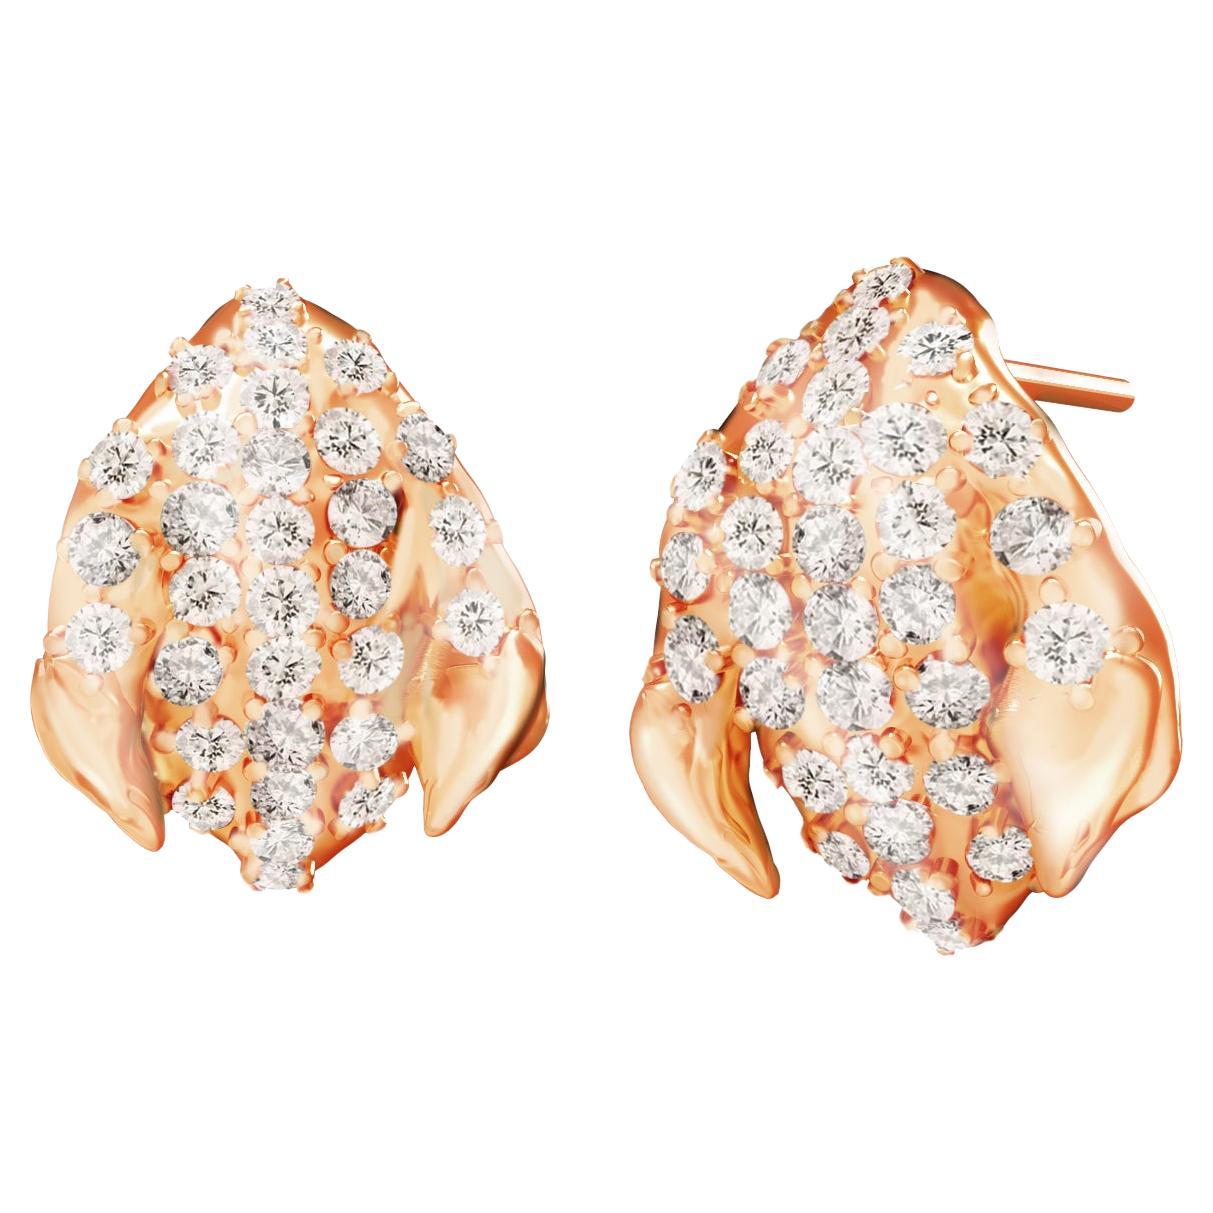 Sechzig Karat Roségold Zeitgenössische Pfingstrosen-Ohrringe mit Diamanten